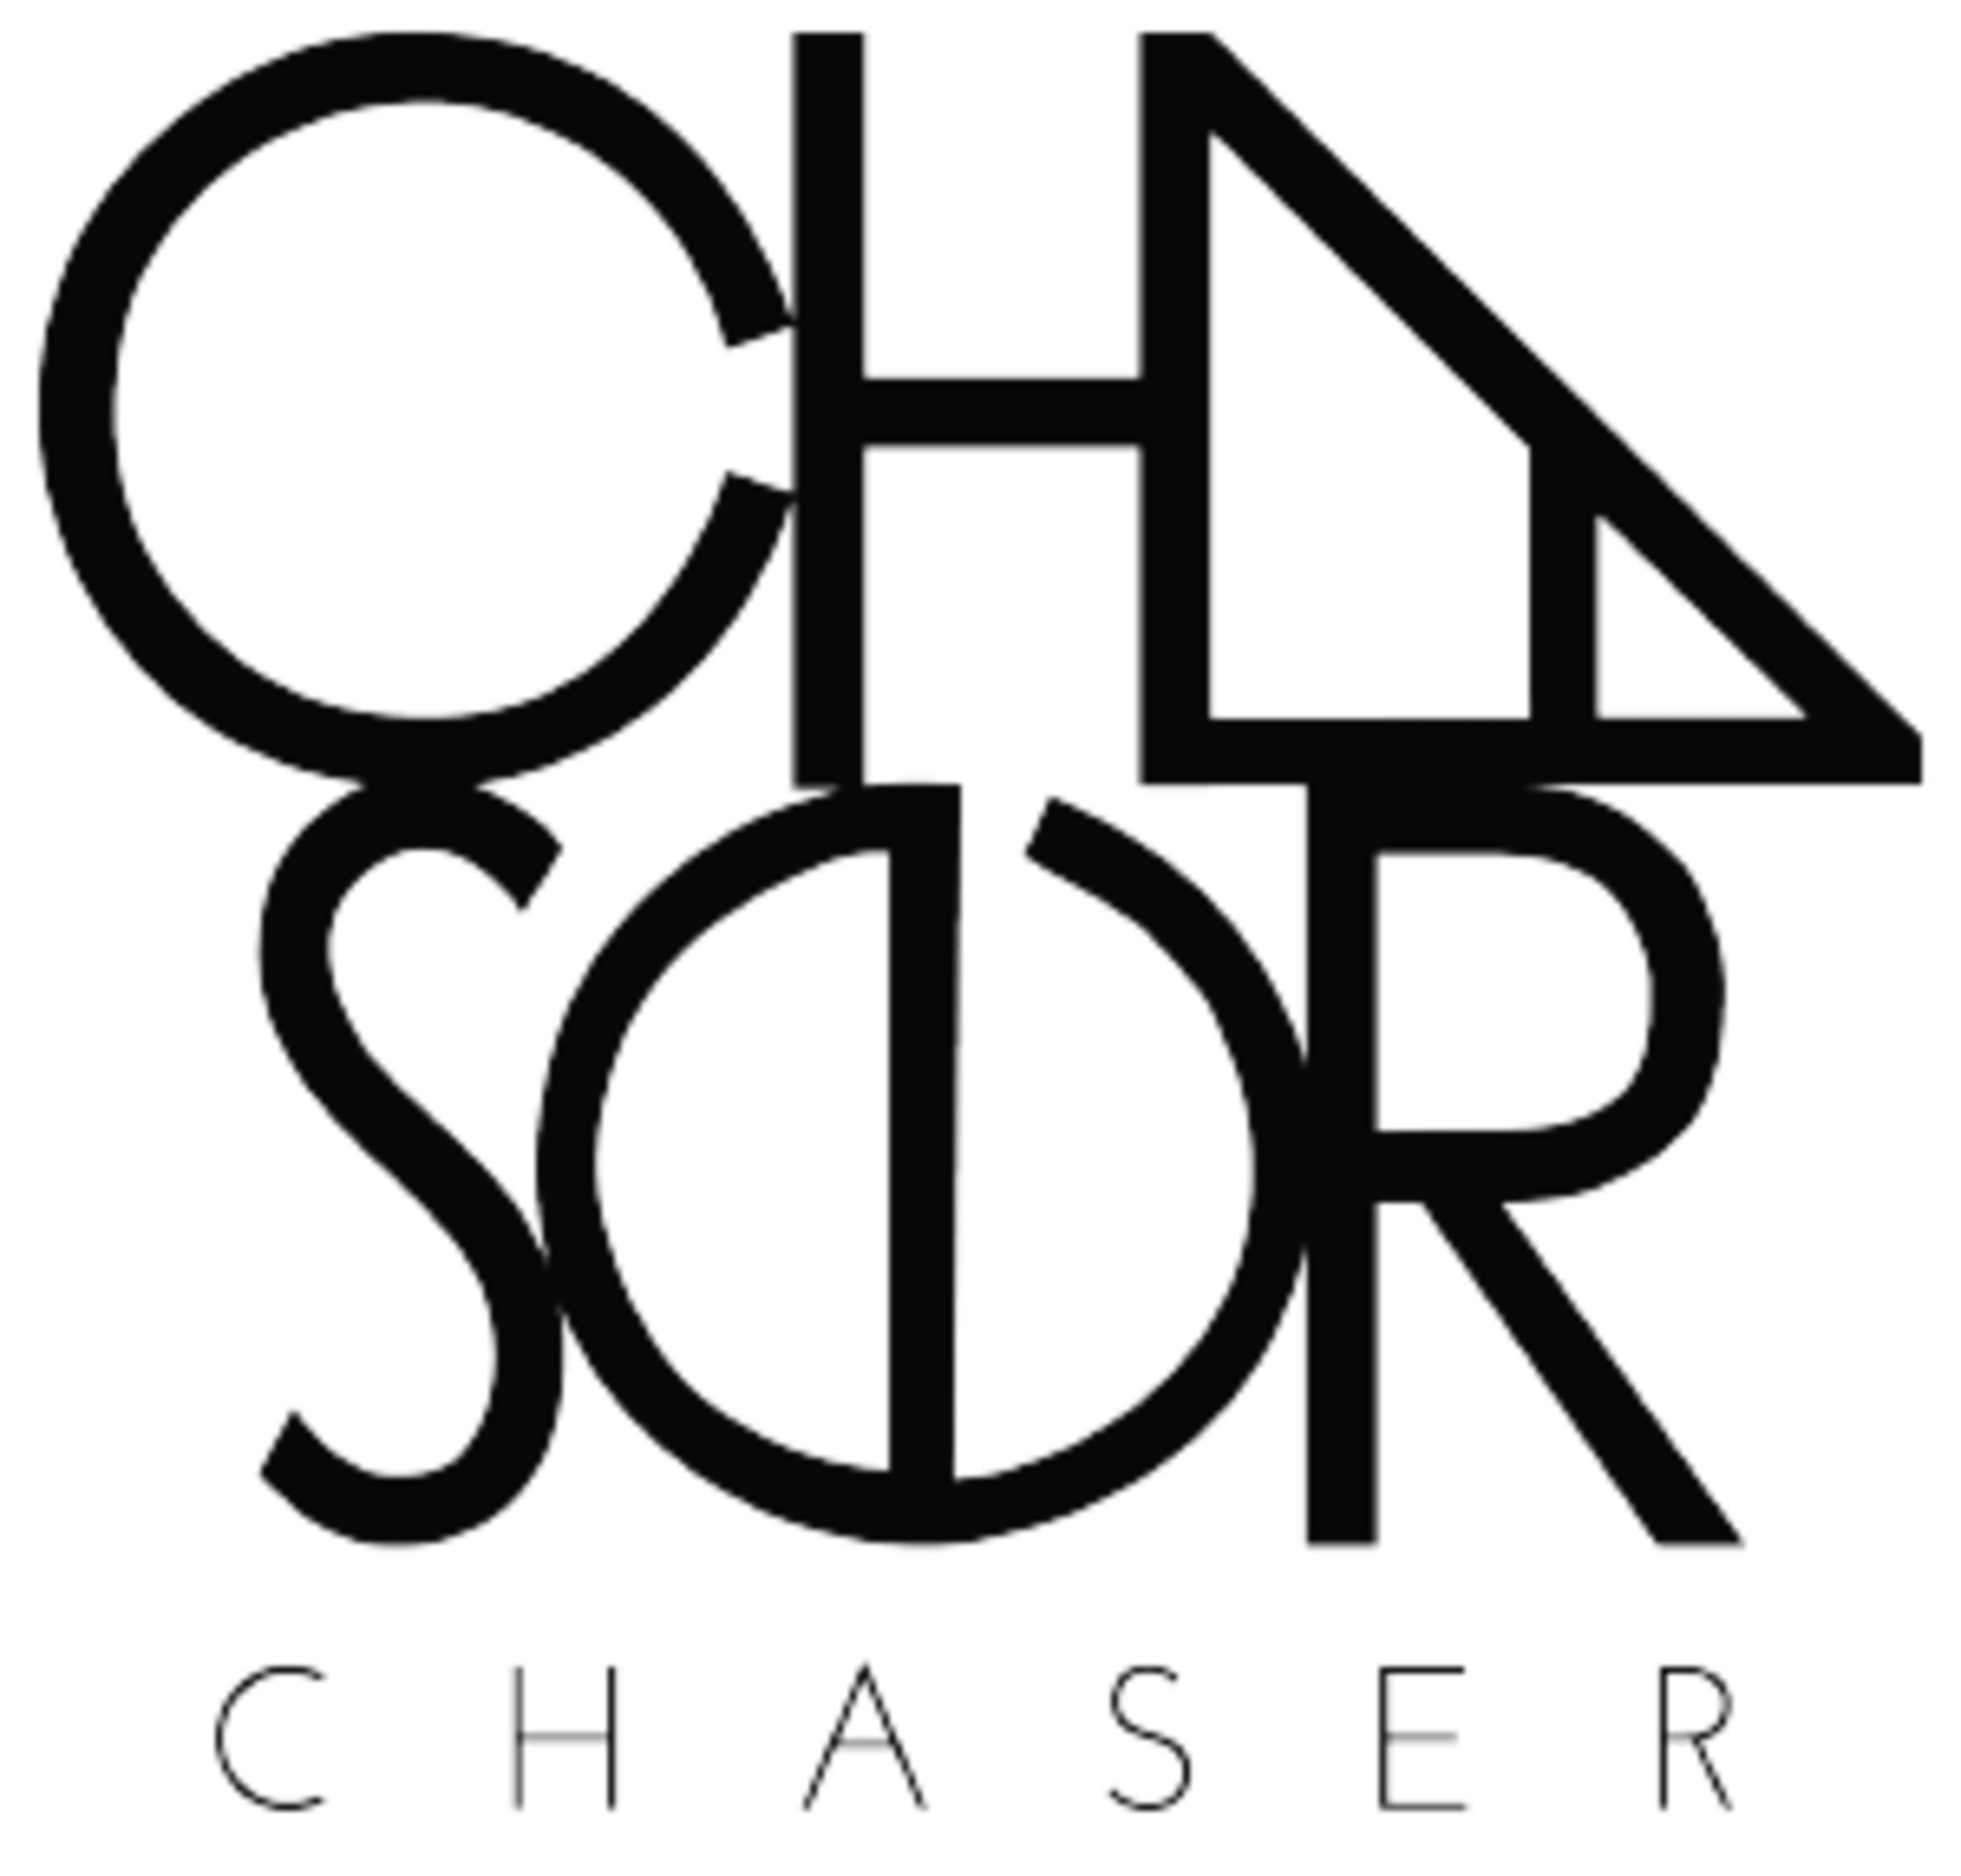 ChaserCode